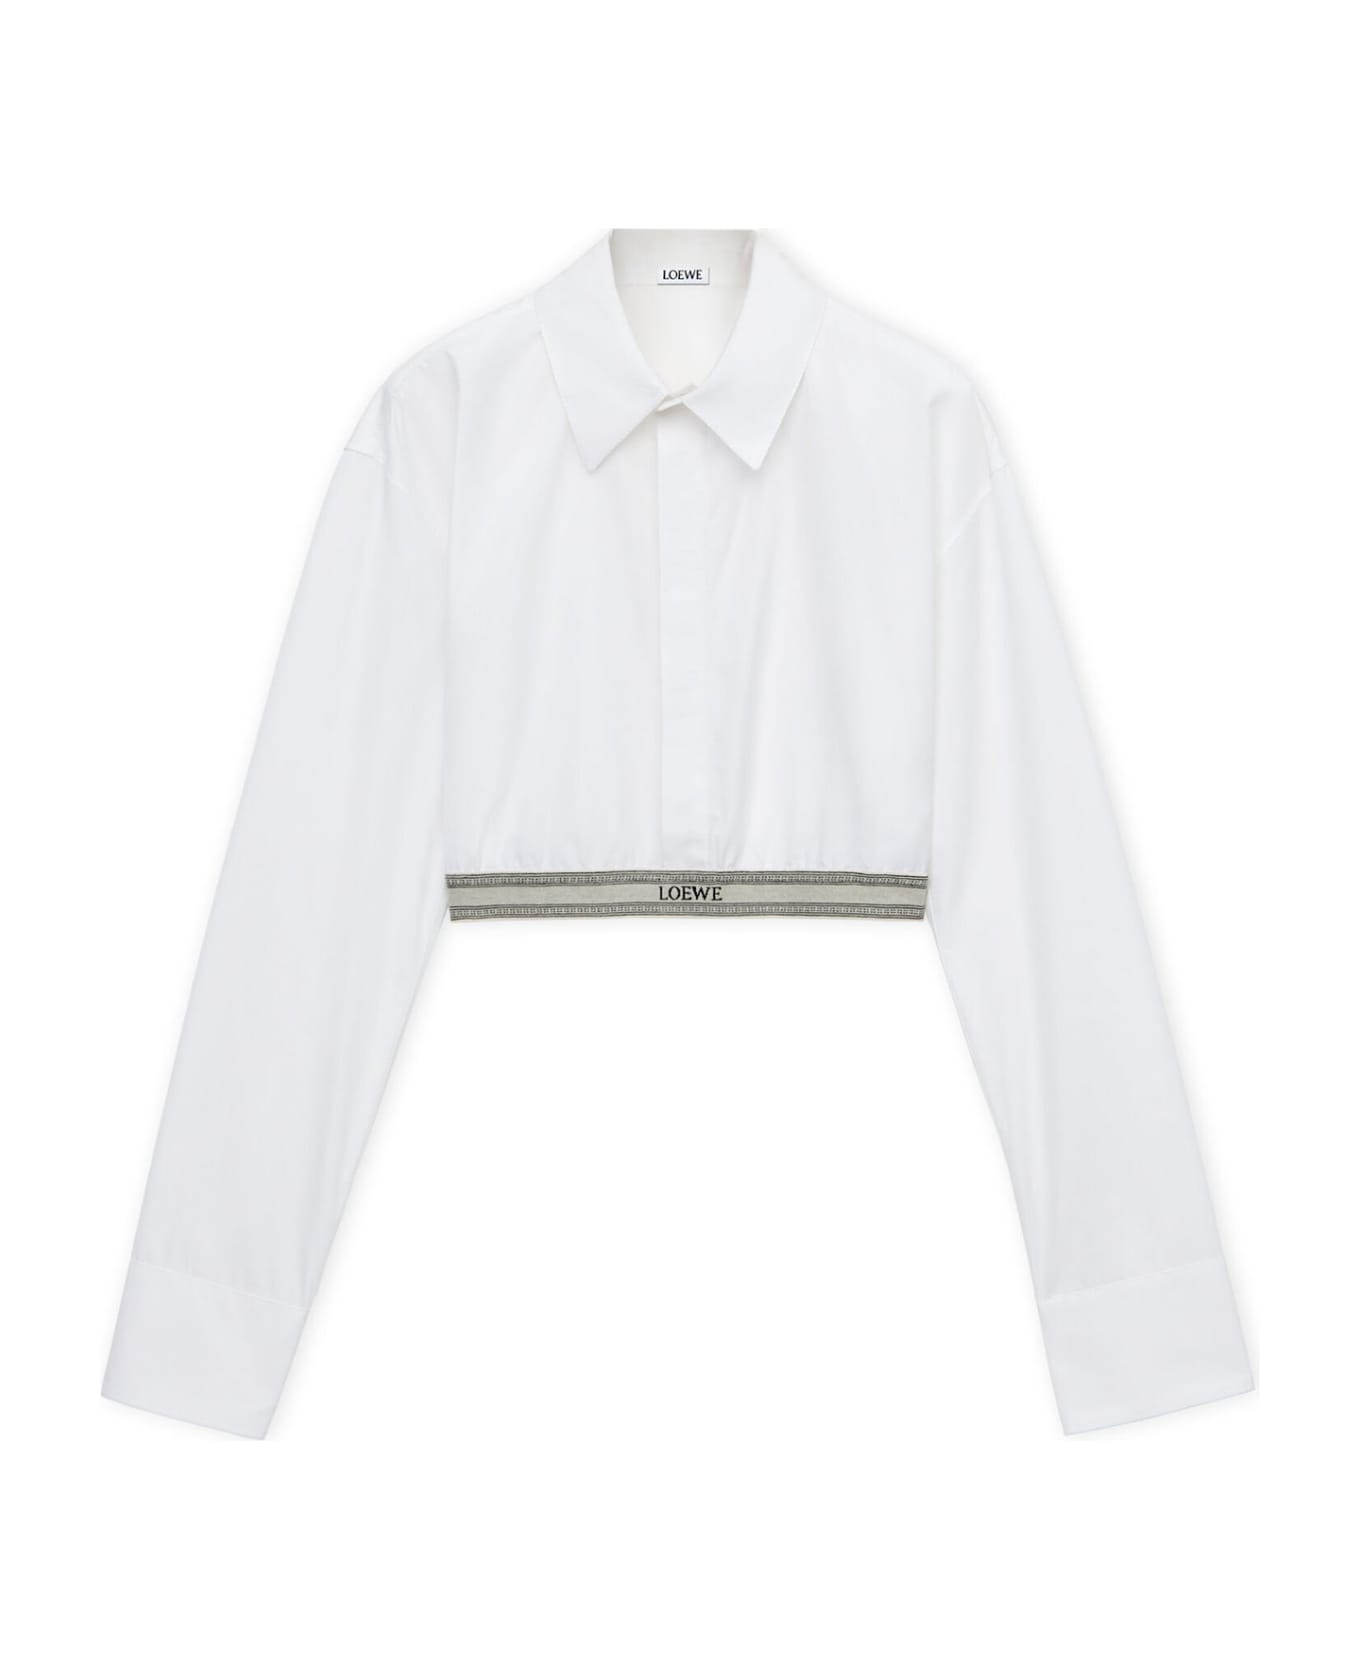 Loewe Shirt - OPTIC WHITE